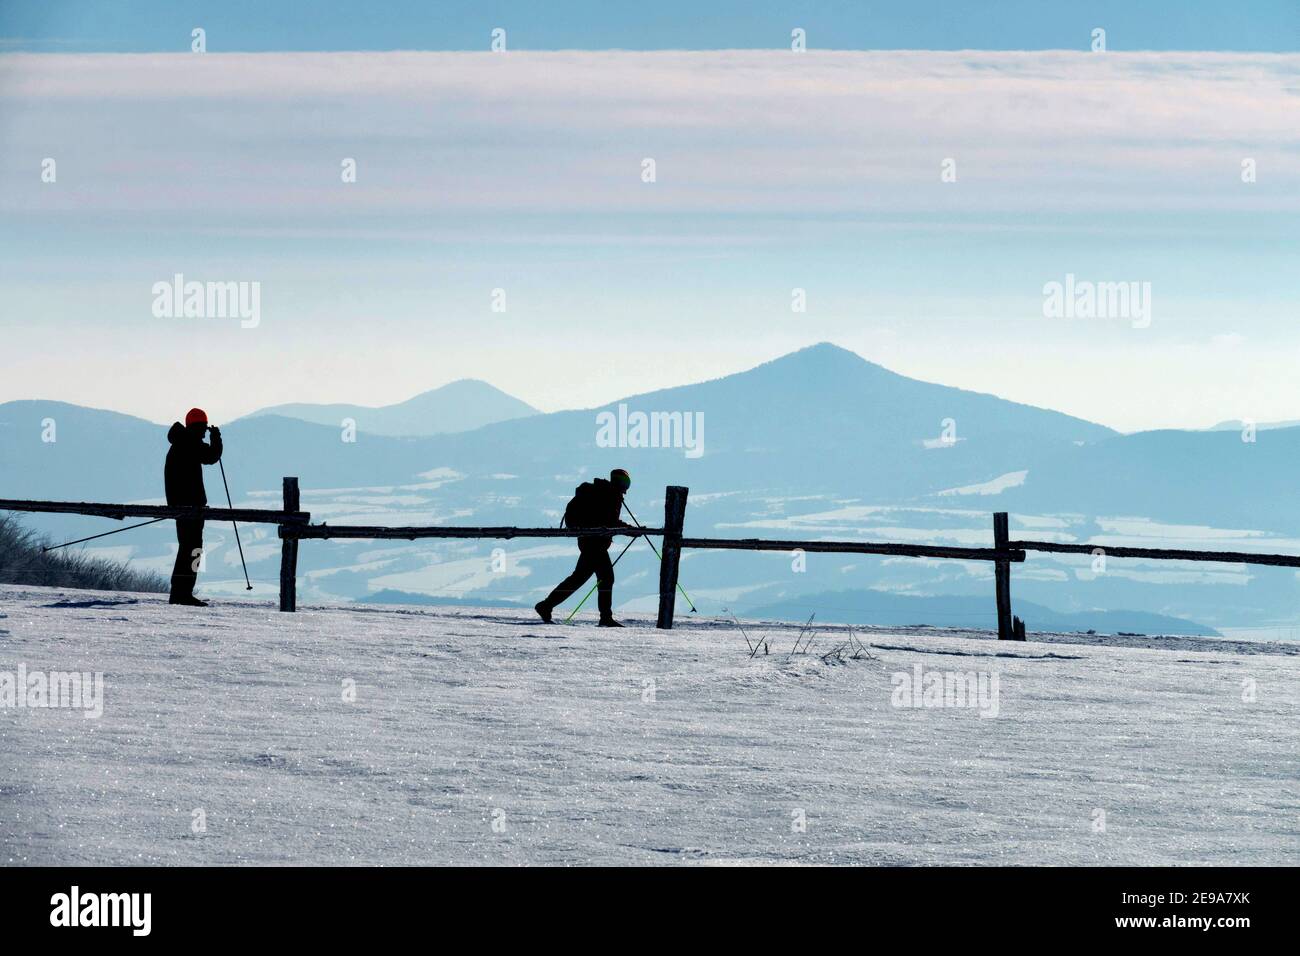 Erzgebirge ore Mountains Repubblica Ceca Campagna neve inverno montagna crinale due sciatori sci di fondo Ceco montagne inverno Foto Stock